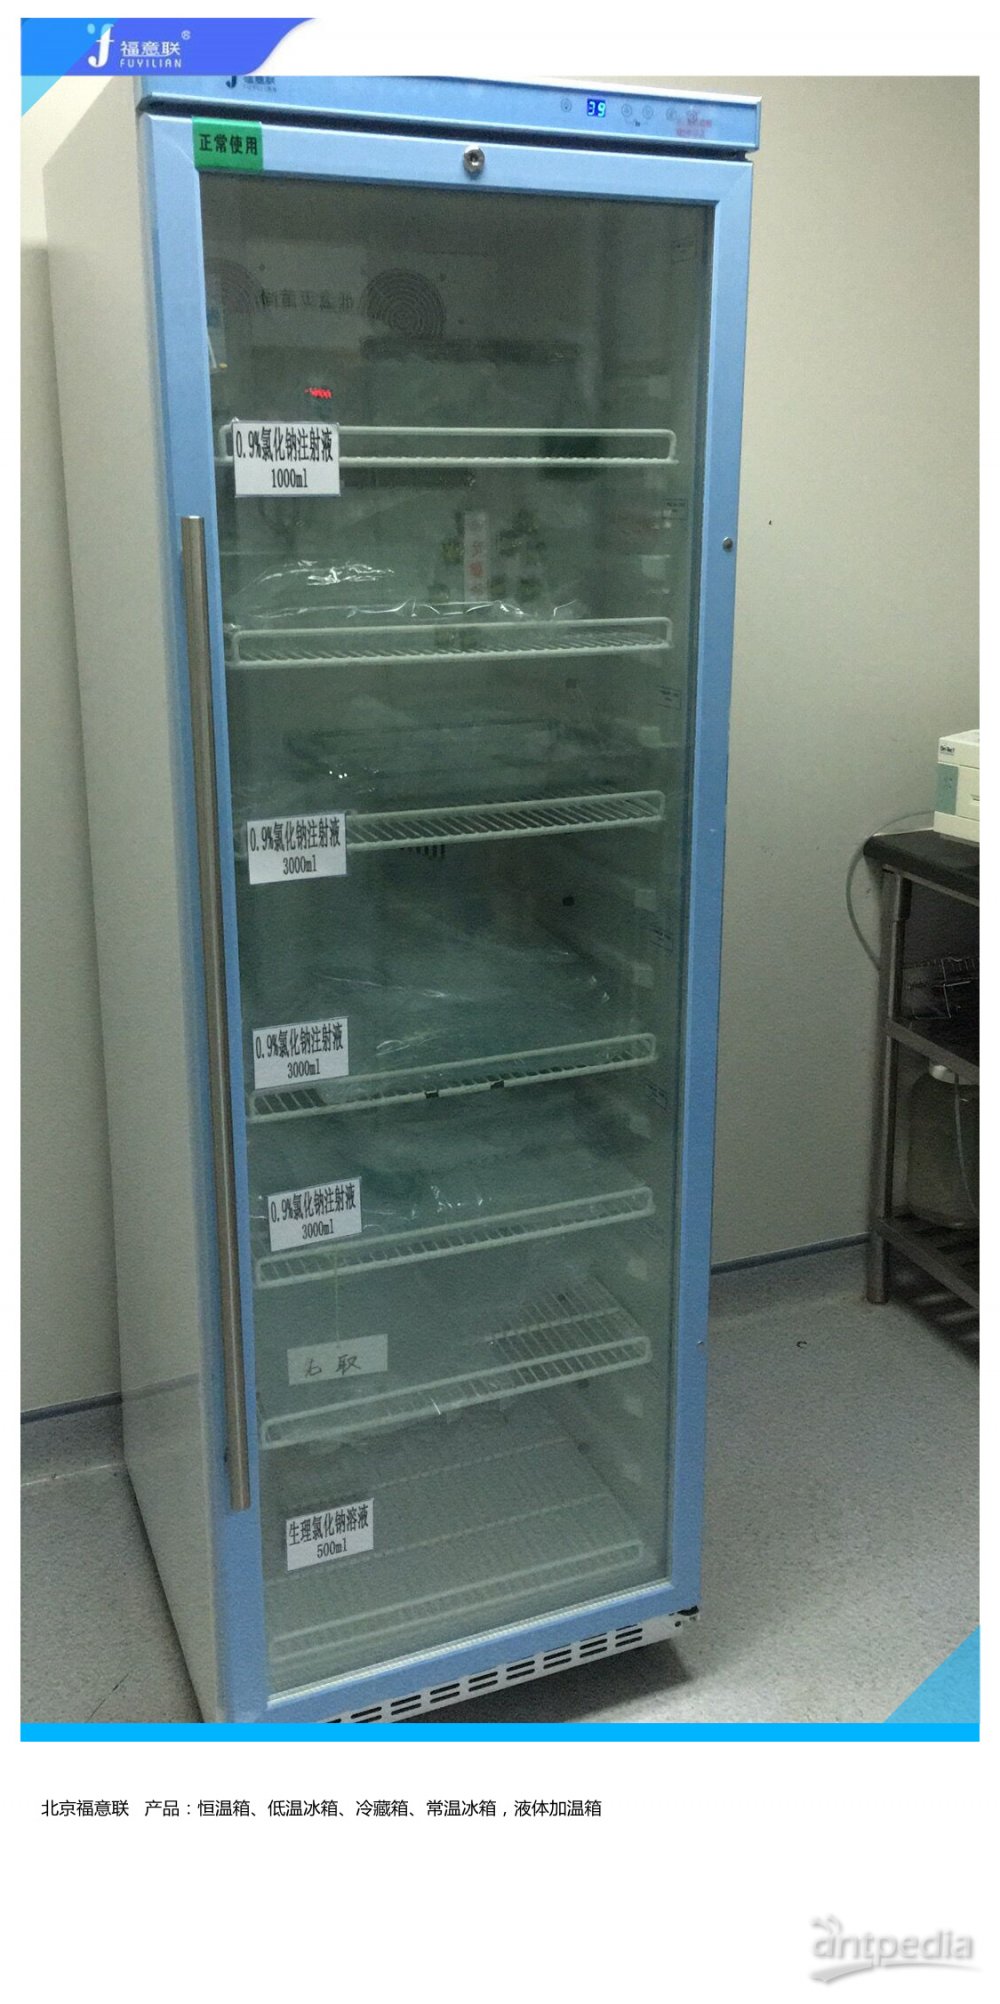 呼吸系统低温保存箱FYL-YS-1028LD